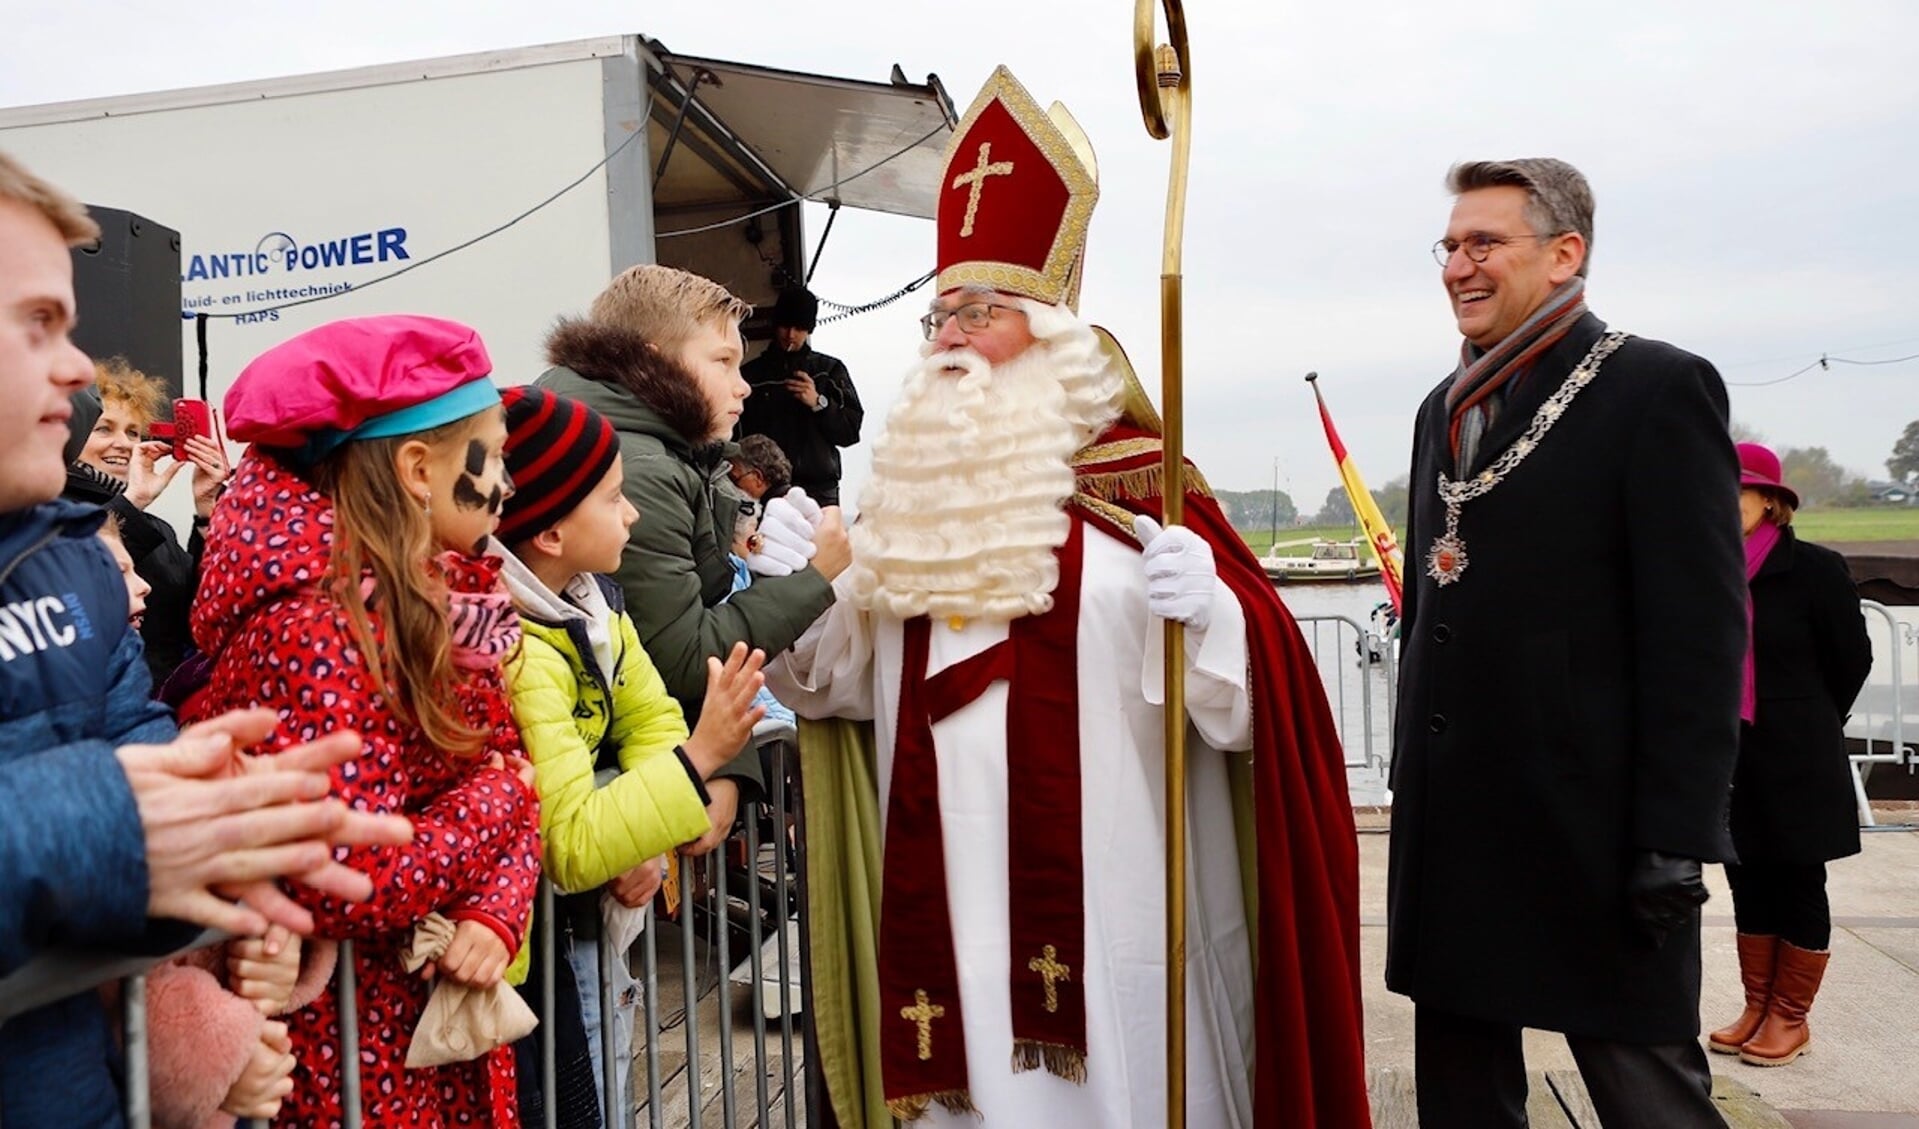 De intocht van Sinterklaas zal dit jaar niet op de traditionele wijze plaatsvinden.